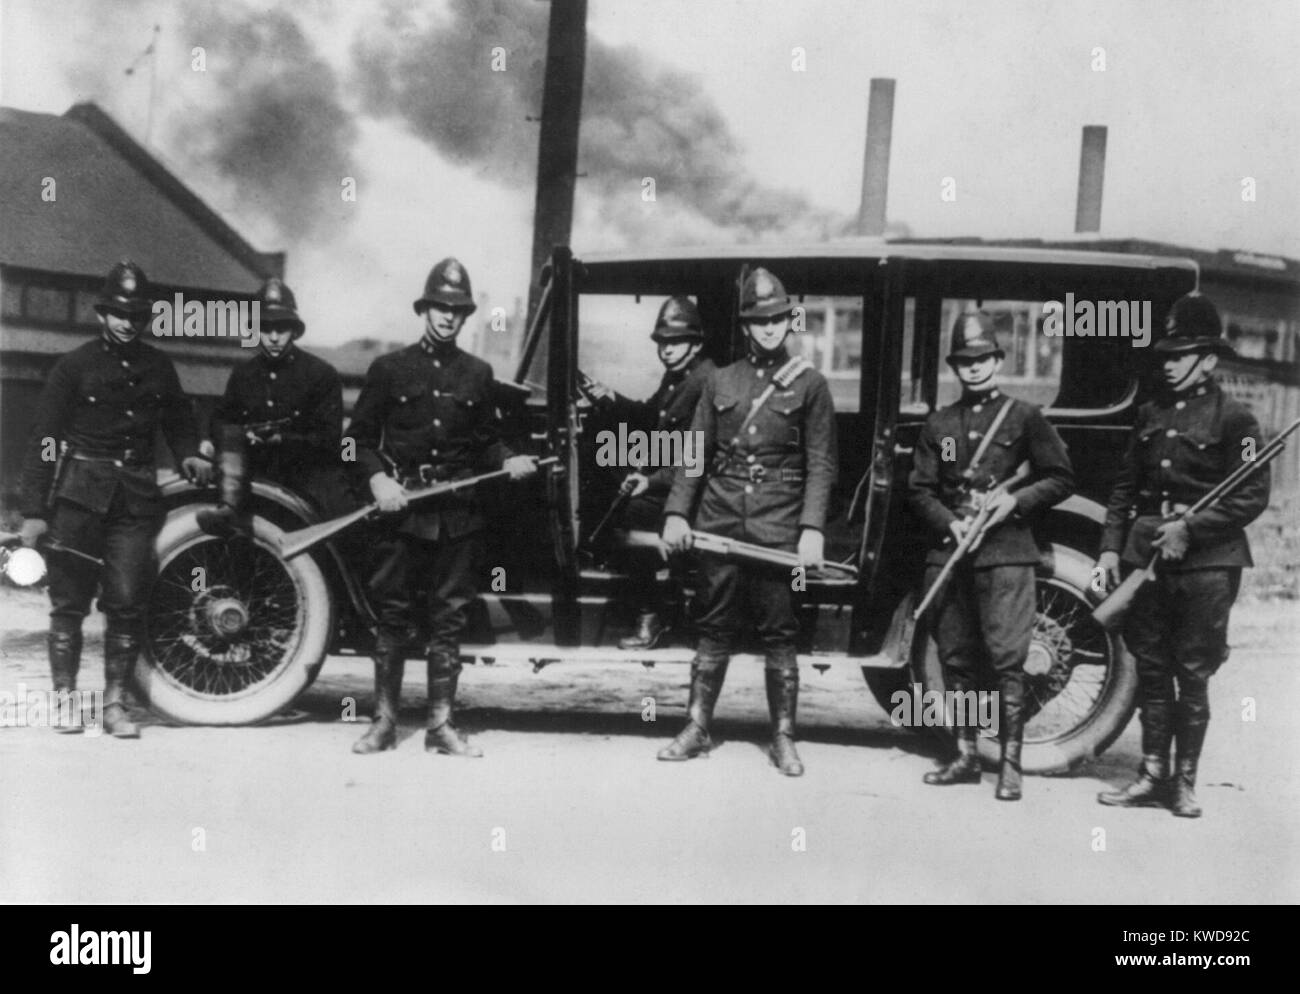 Membro troopers con riot guns attendono a dovere Farrell, Pennsylvania durante l'acciaio sciopero del 1919. Il post-guerra spaventare rosso maggiore sentimento pubblico contro i sindacati (BSLOC 2016 8 42) Foto Stock